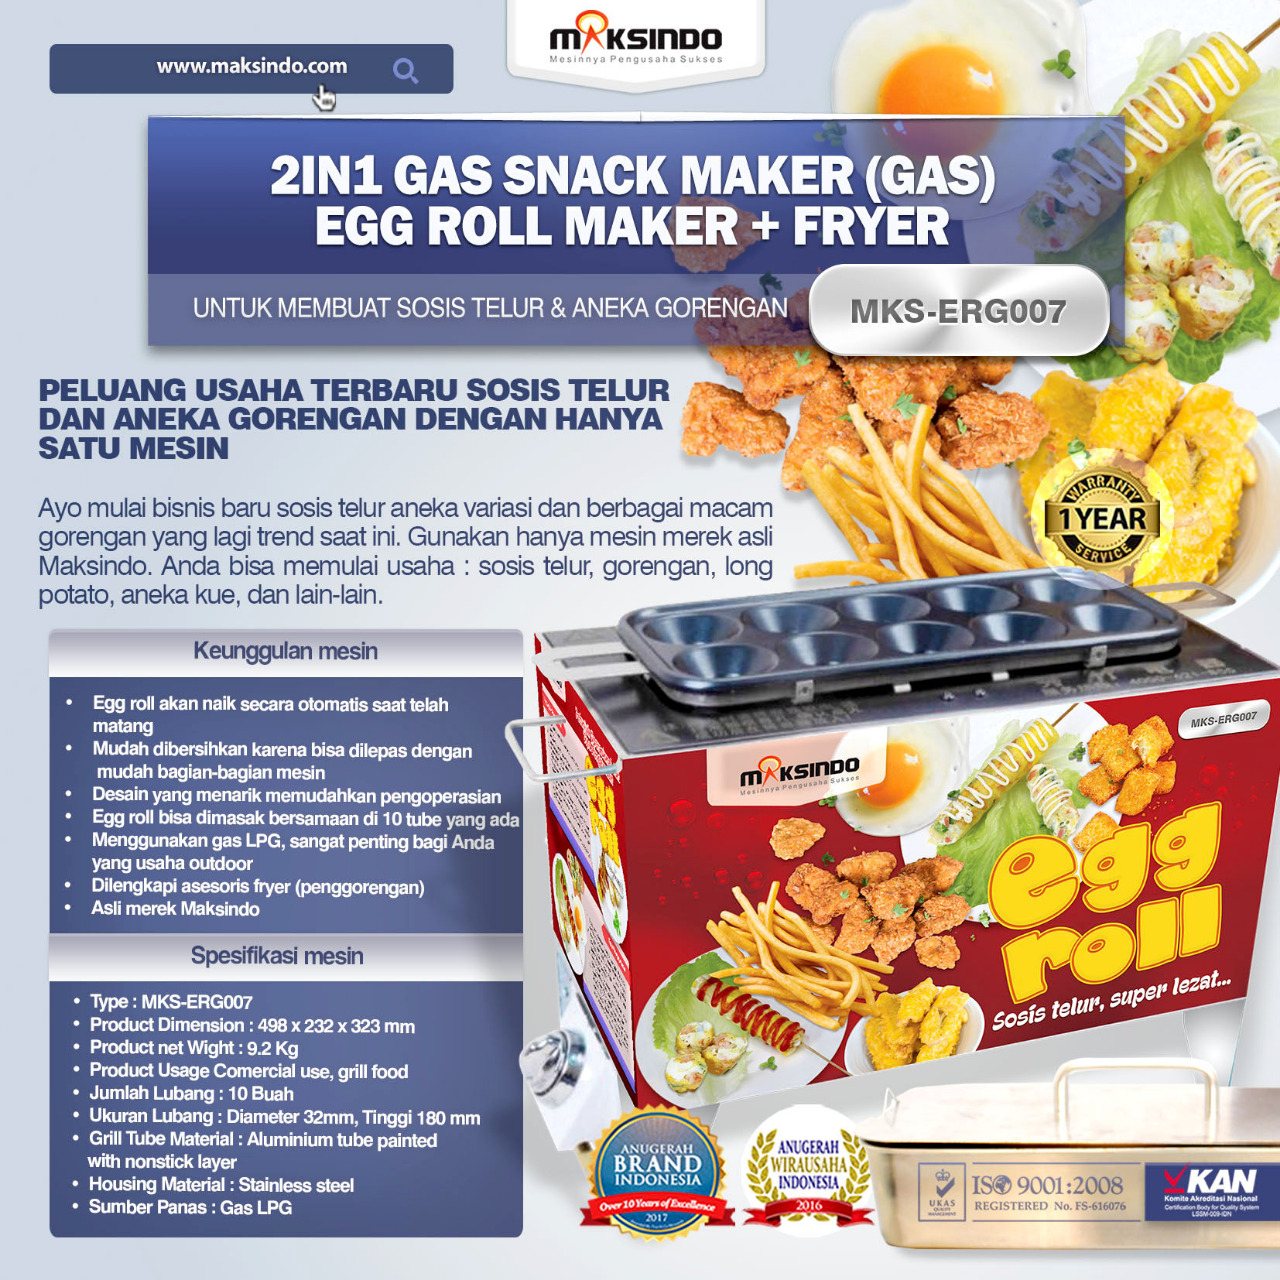 Jual Mesin Egg Roll Gas 2in1 Plus Fryer ERG007 di Tangerang